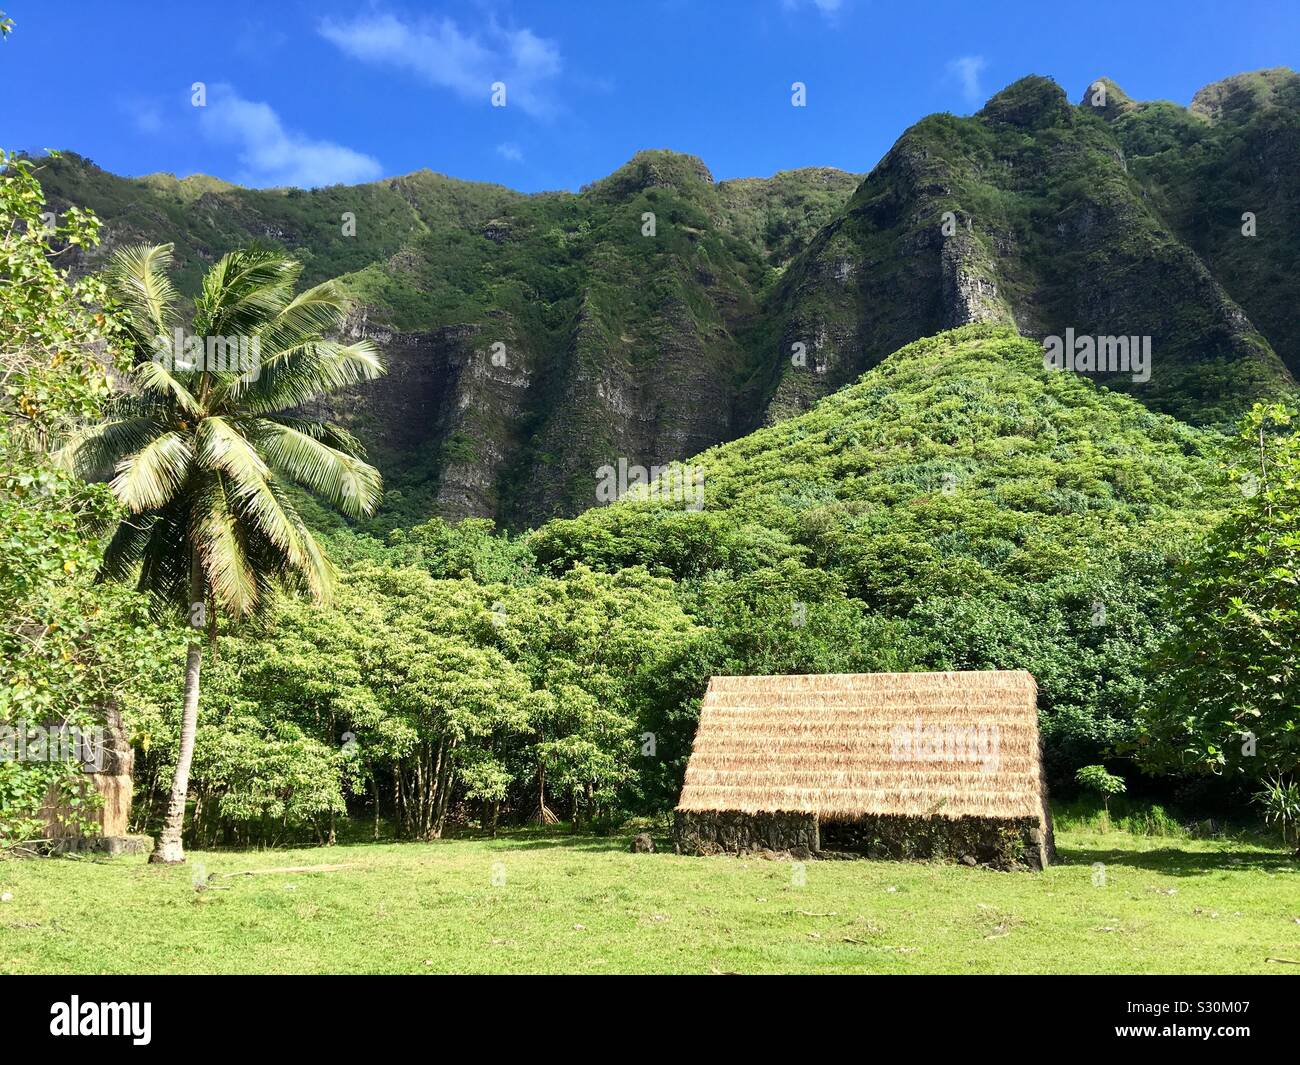 Ubicación de la película Jumanji Bienvenidos a la Jungla filmado en Kualoa Ranch en Oahu, Hawai Foto de stock